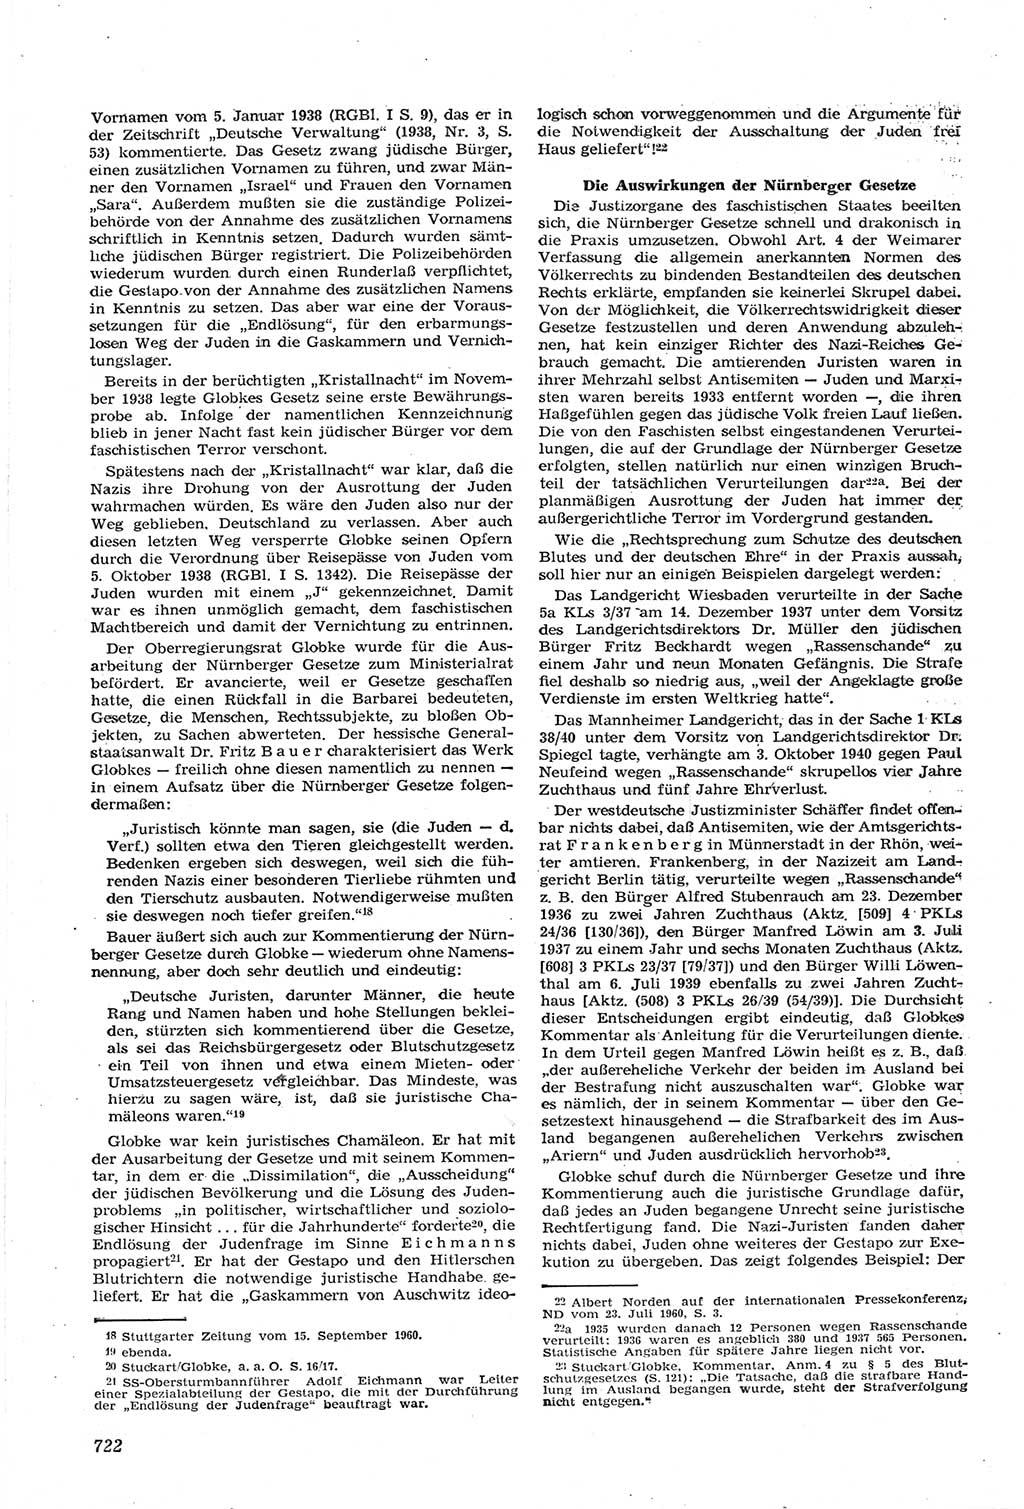 Neue Justiz (NJ), Zeitschrift für Recht und Rechtswissenschaft [Deutsche Demokratische Republik (DDR)], 14. Jahrgang 1960, Seite 722 (NJ DDR 1960, S. 722)